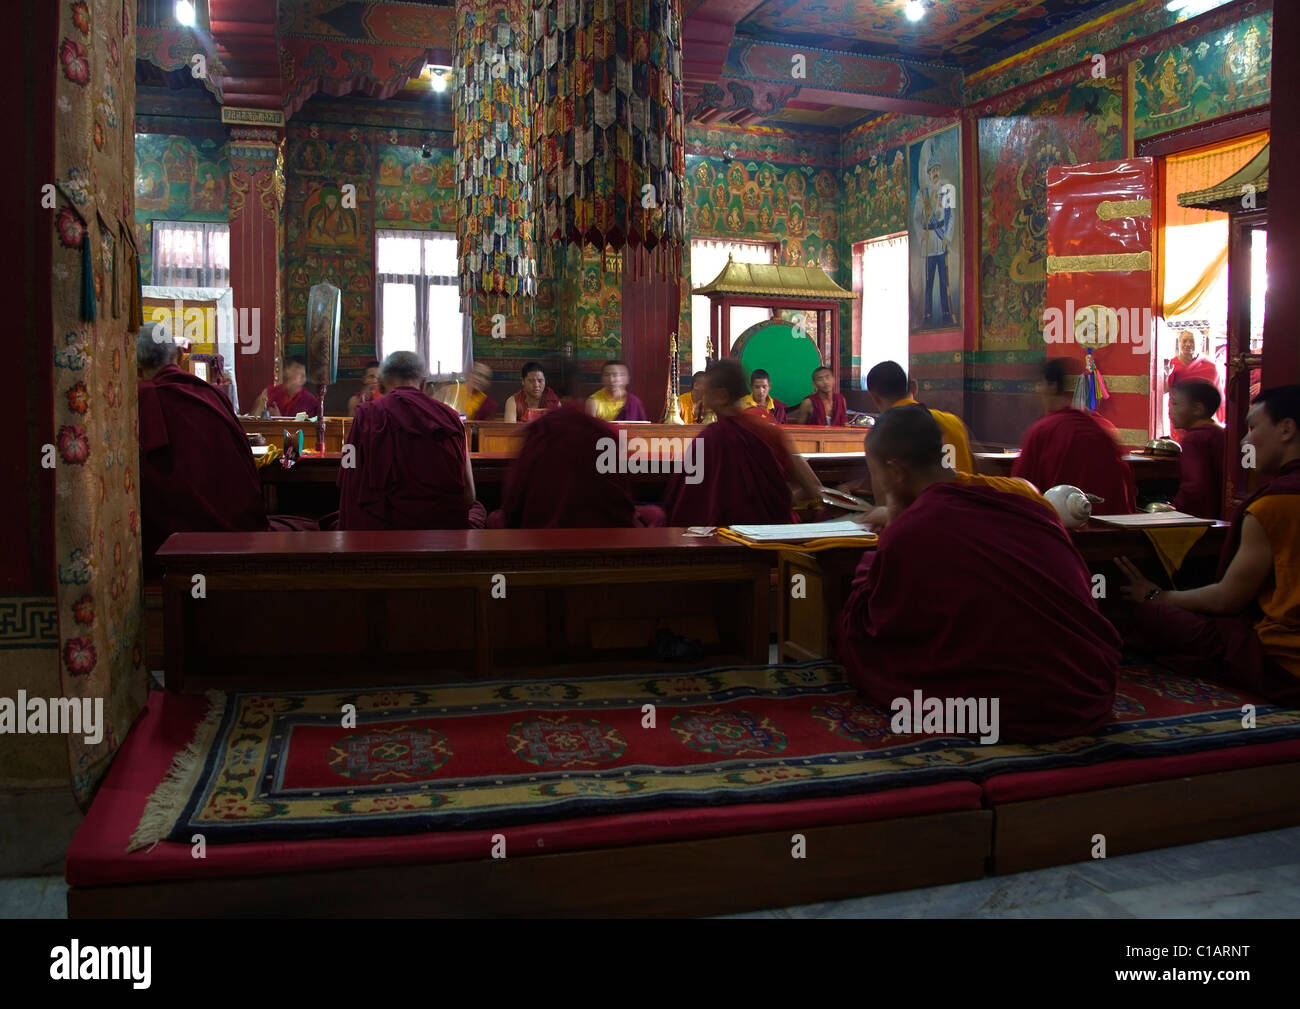 Les moines bouddhistes l'adoration de l'antique int au Stupa Boudhanath Katmandou Népal Asie Banque D'Images